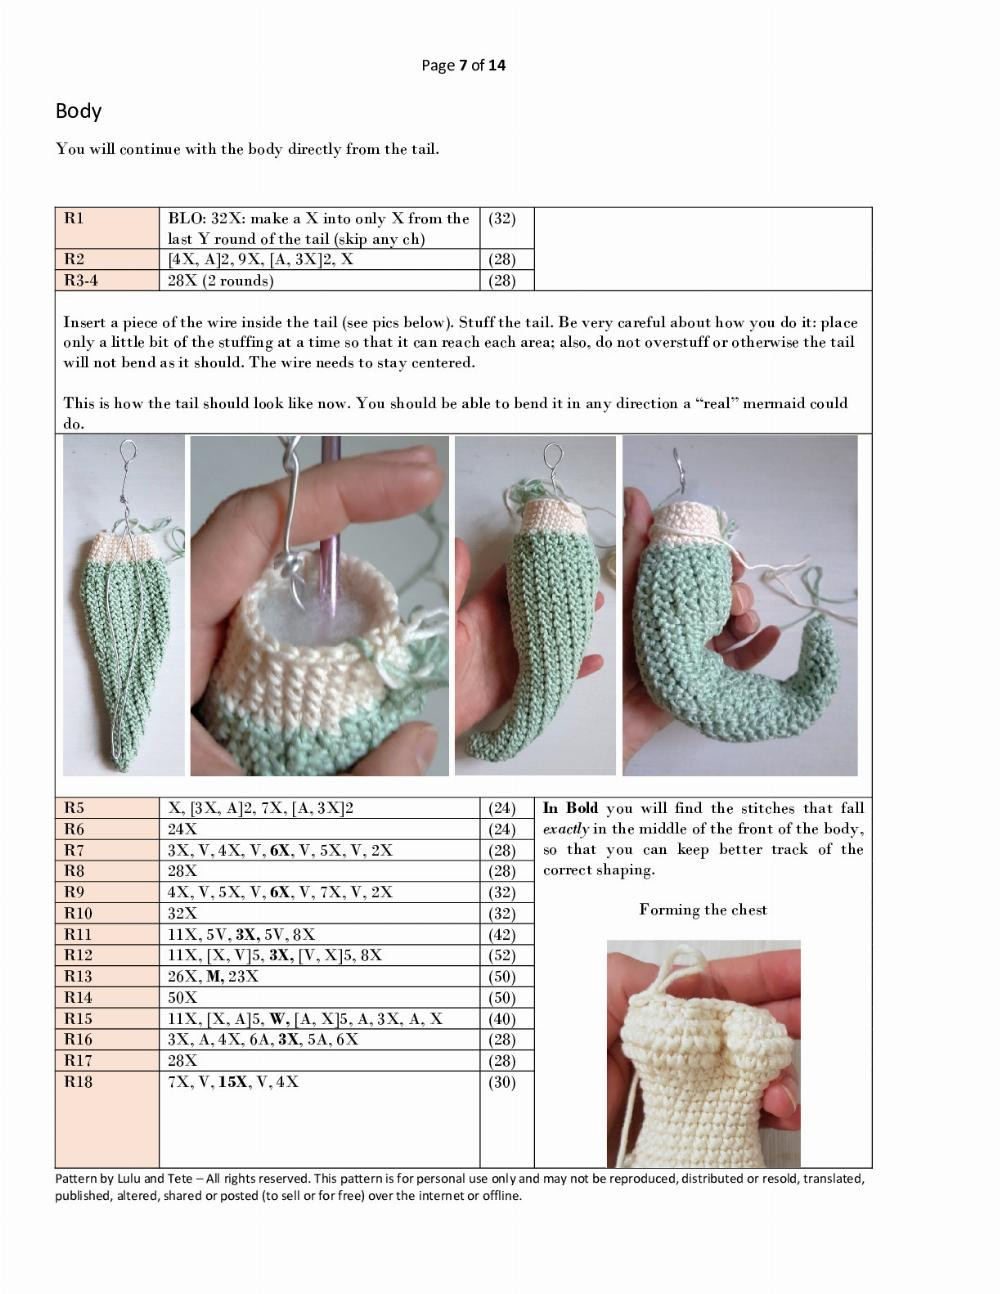 Amelia Crochet pattern